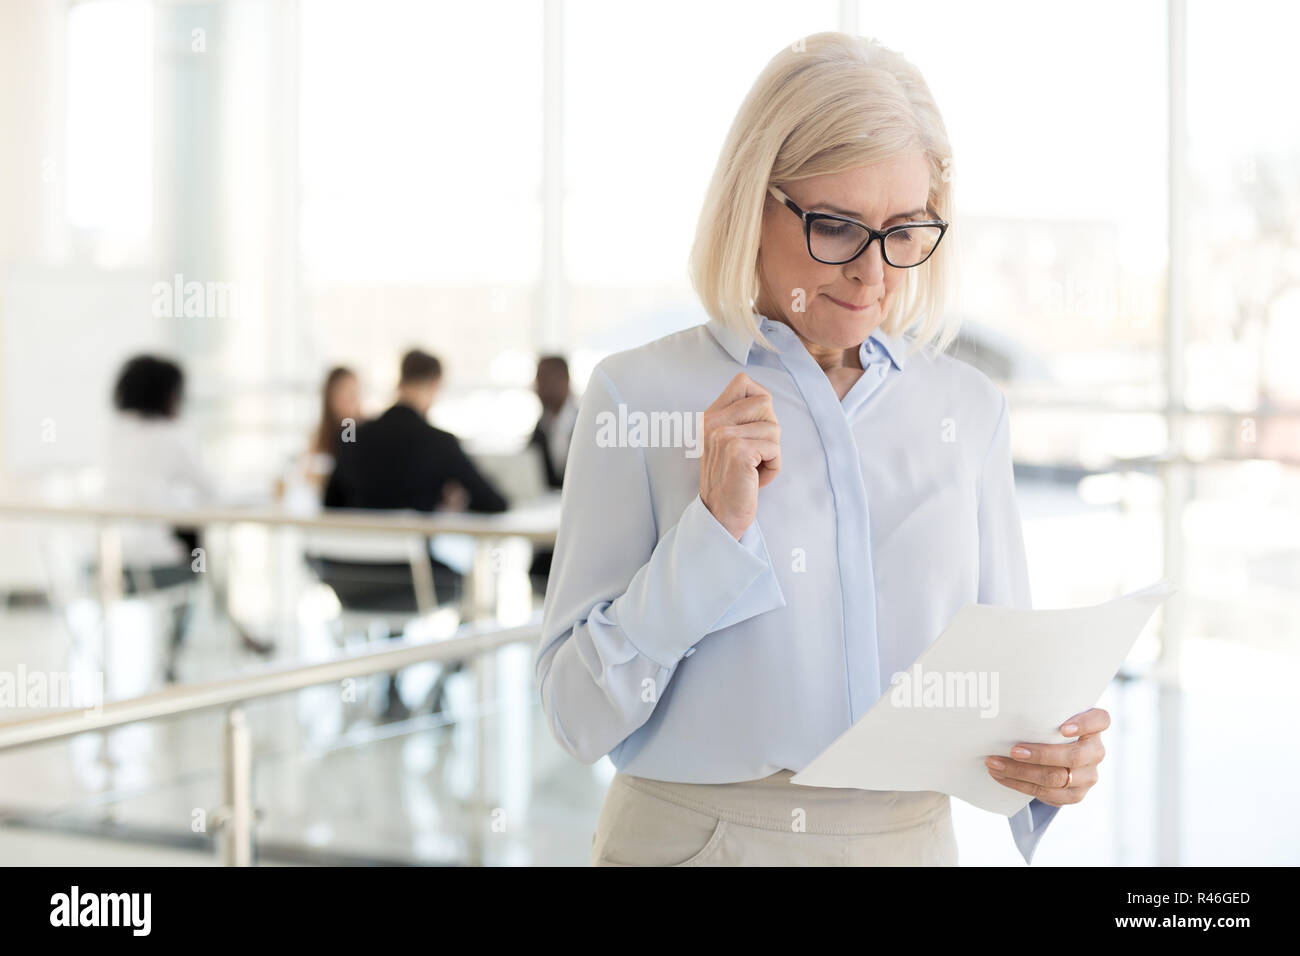 Nervous middle-aged businesswoman feeling stressed afraid waitin Stock Photo